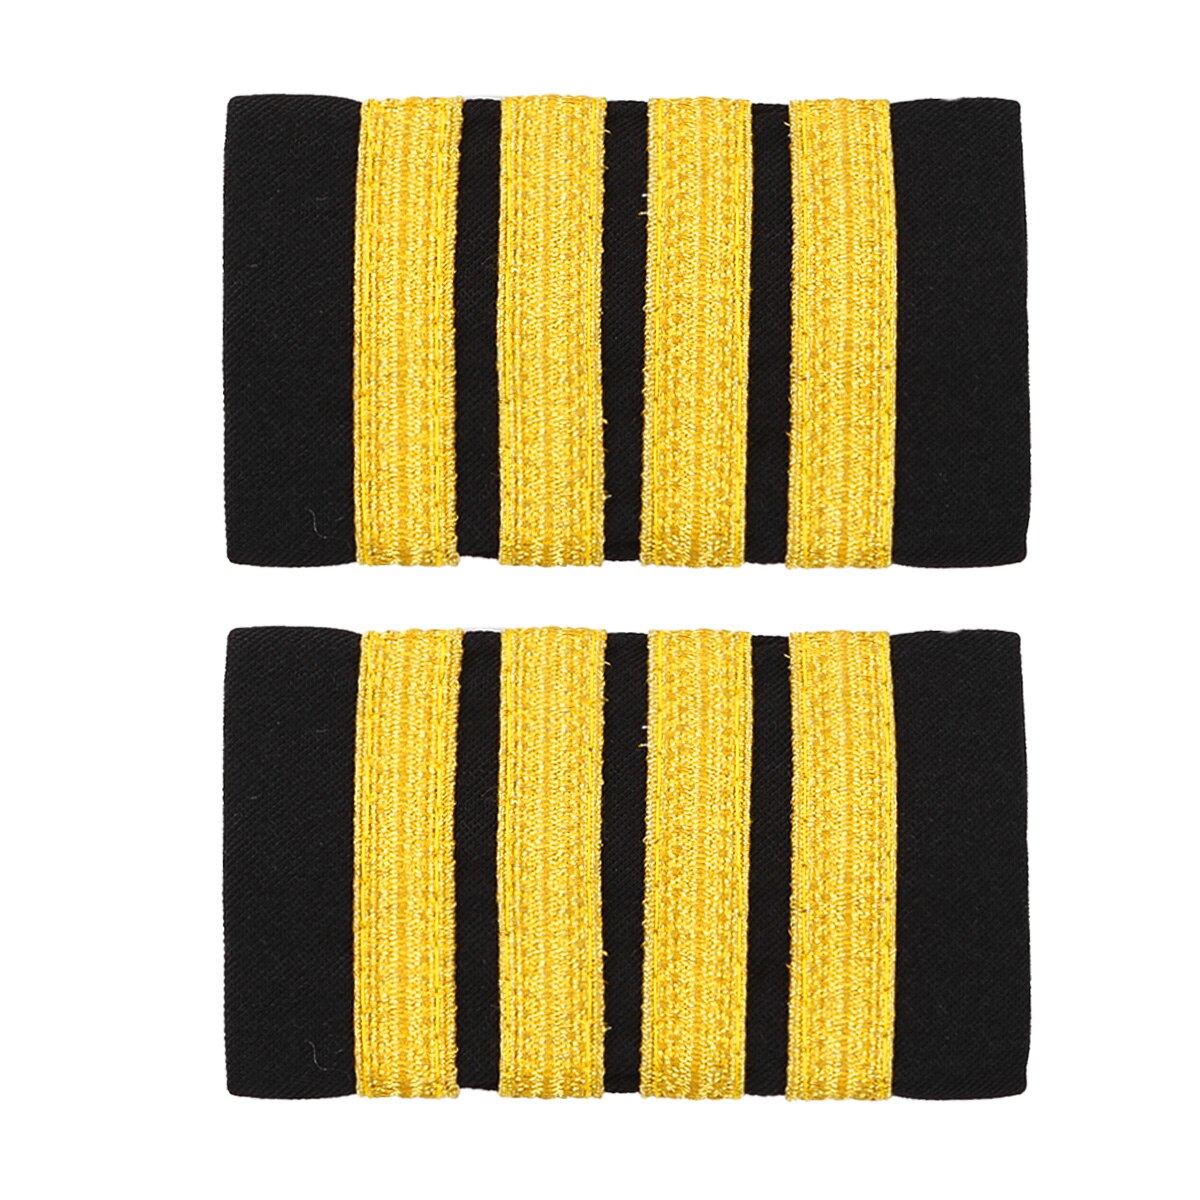 1 paar Traditionellen Uniform Dekor Epauletten Professionelle Pilot Shirt Epauletten DIY Gold Streifen Schulter Bord Abzeichen für Kleidung: Schwarz Gold vier